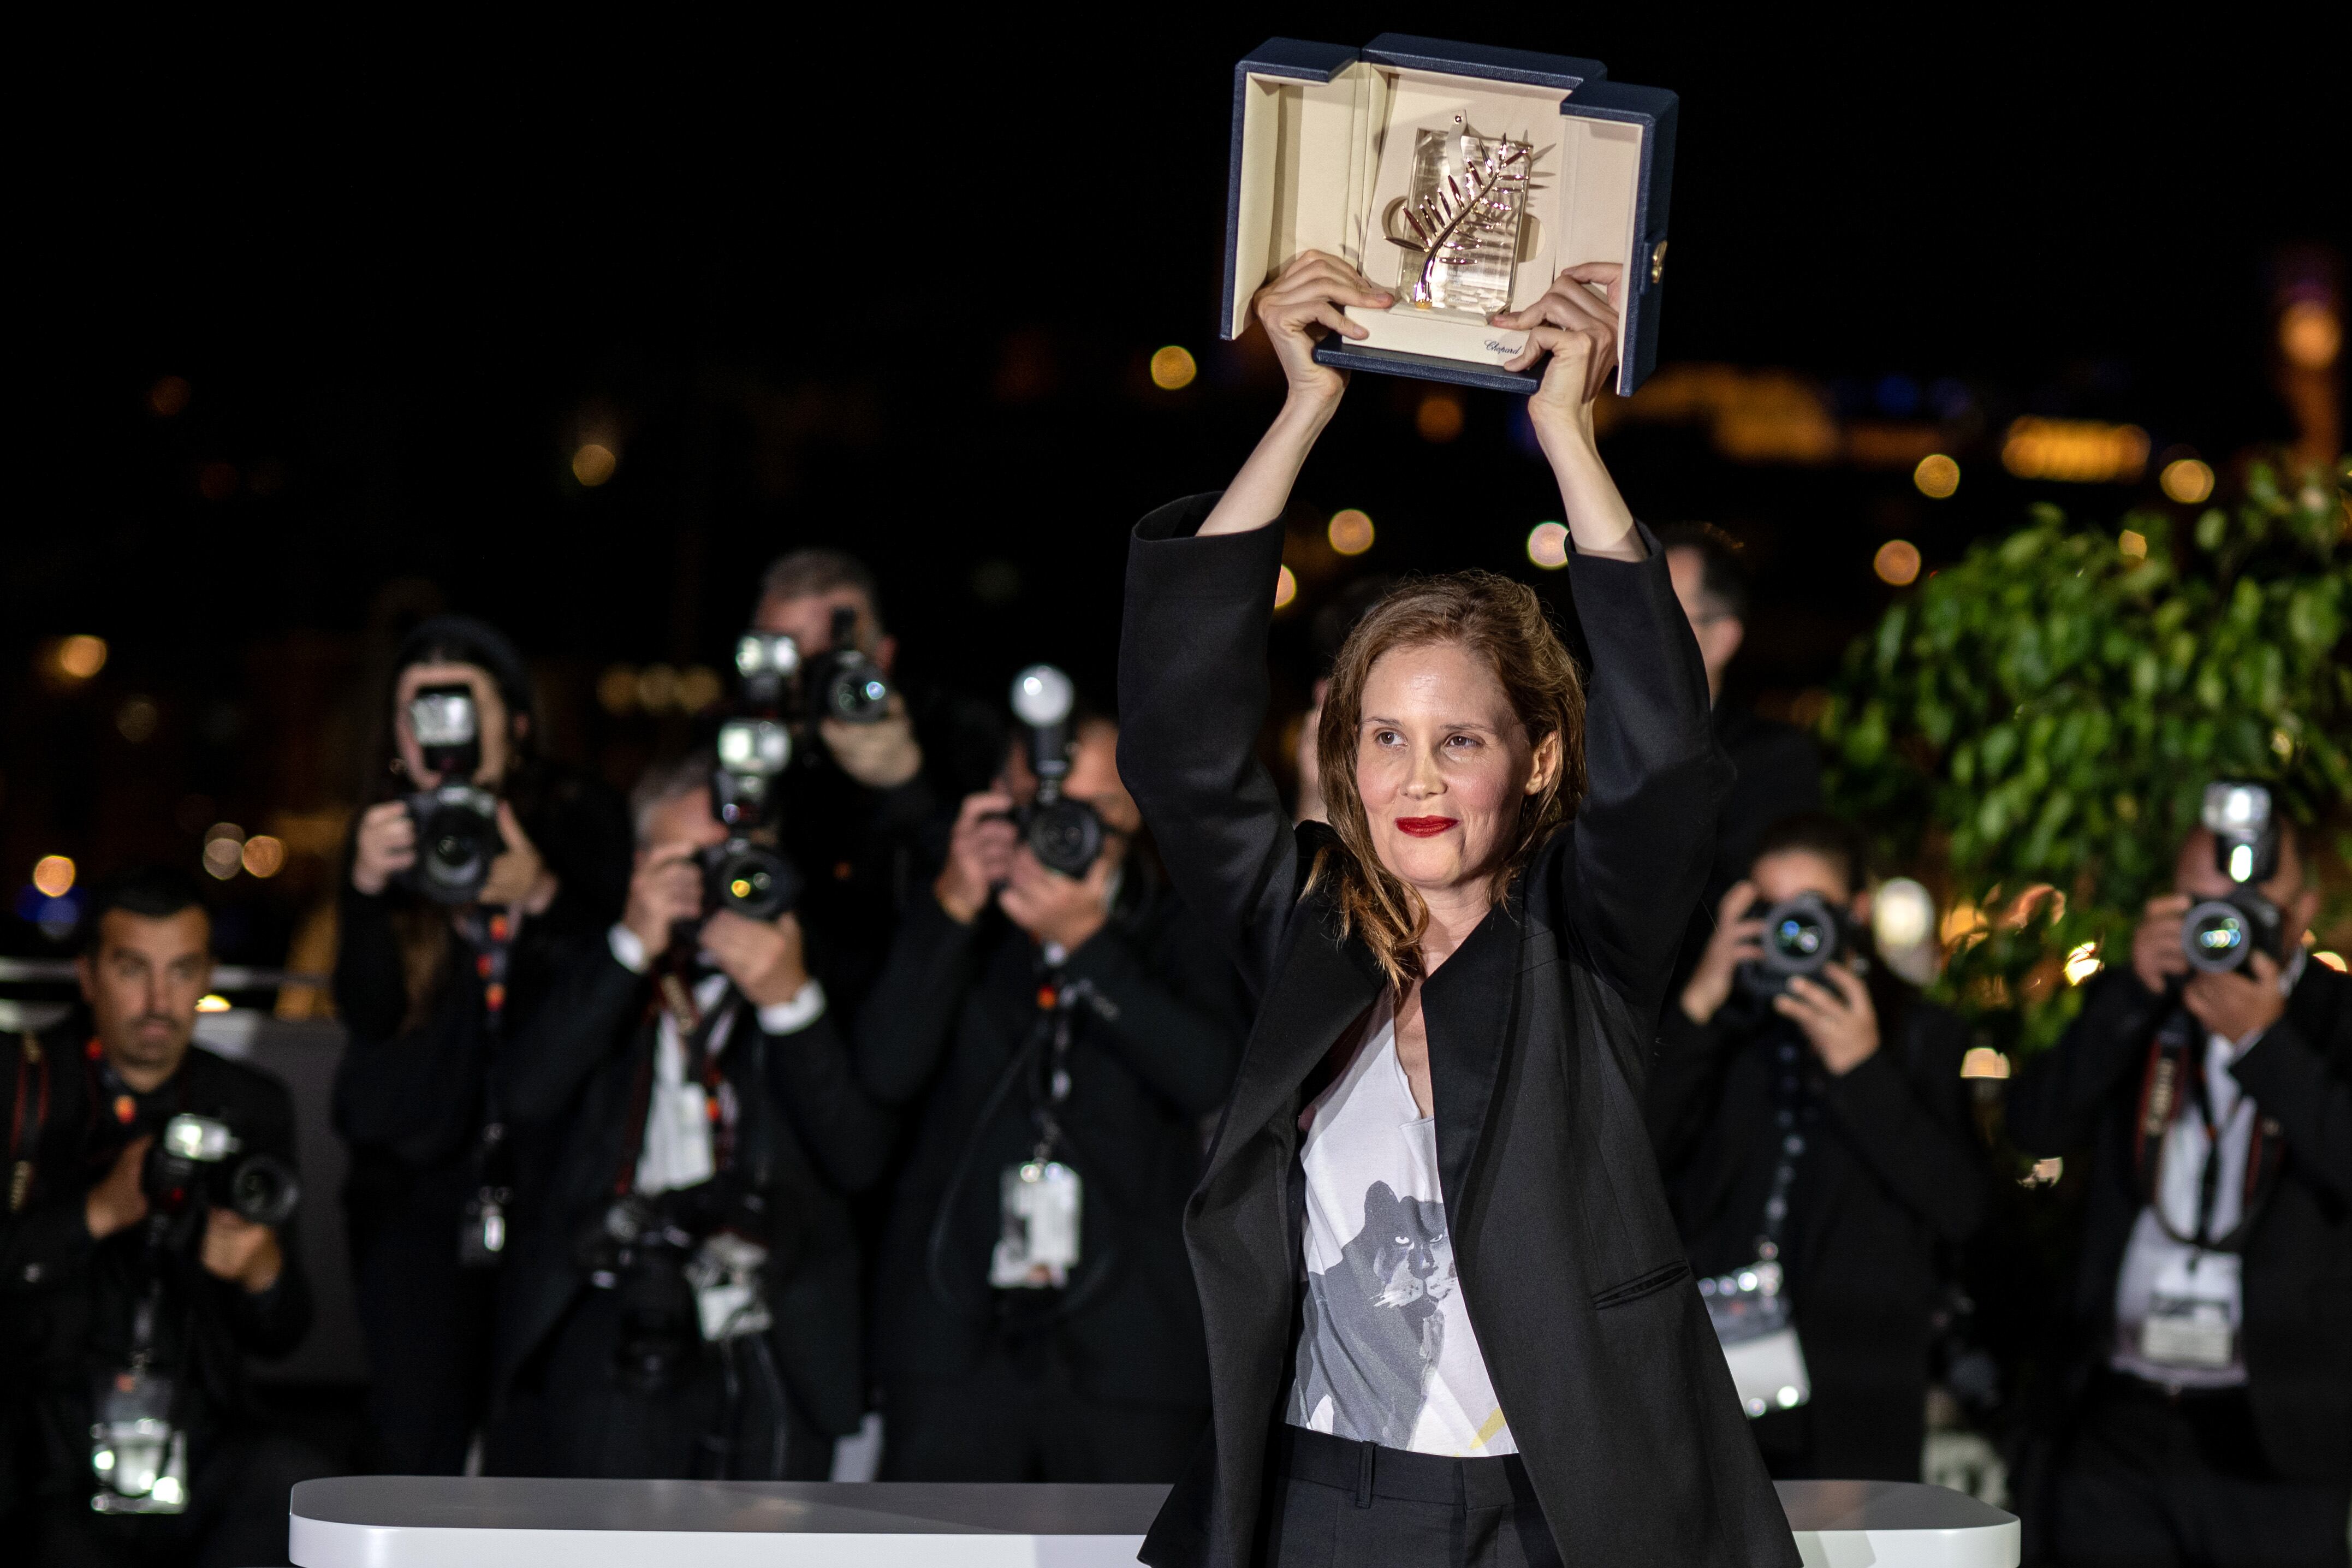 La directora Justine Triet, después de recibir la Palma de Oro del Festival de Cannes, en mayo de 2023.